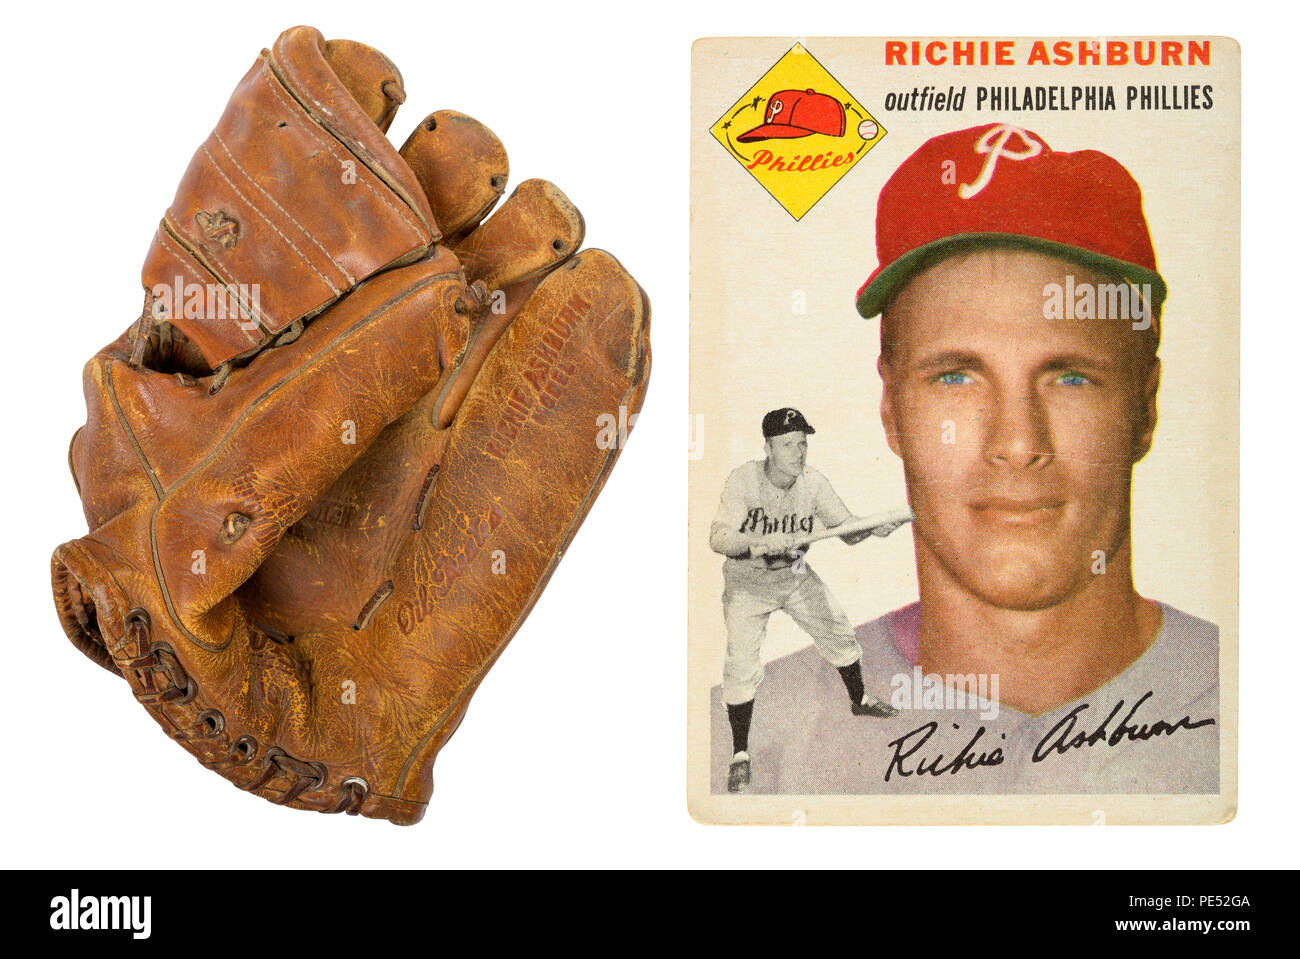 Ein 50er-Stall 40 L Richie Ashburn autographierter Baseball Handschuh und ein original 1954 Richie Ashburn baseball Card Stockfoto